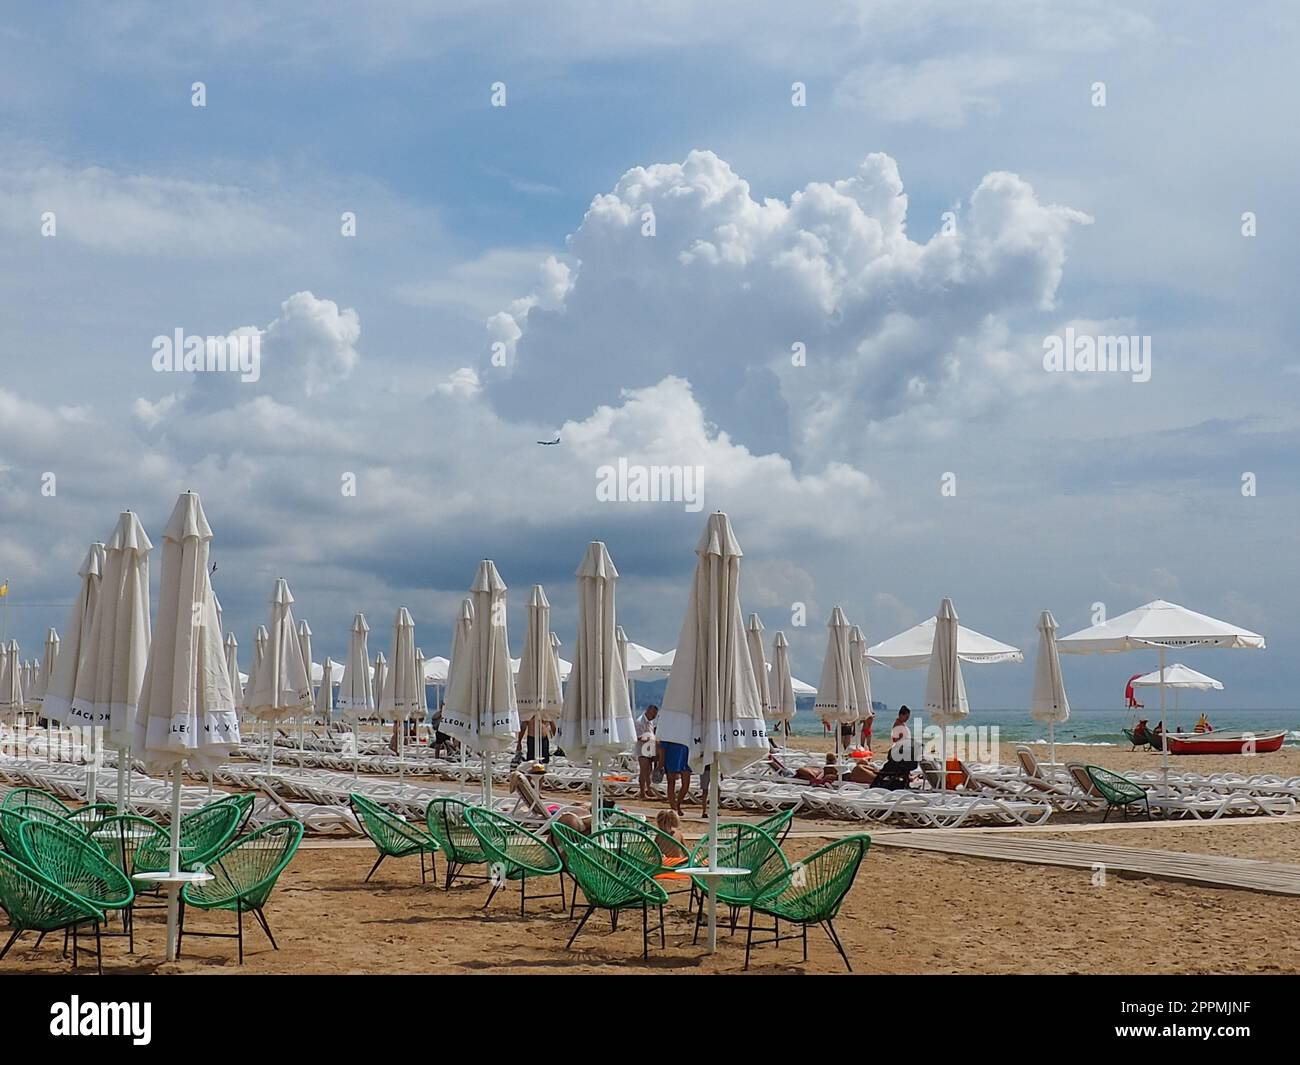 Anapa, Russland, 15. August 2021 Sonnenliegen und Sonnenschirme am Sandstrand nach dem Regen. Strandsaison. Strandcafe mit Korbstühlen. Touristen, die Leute laufen lassen. Eine Sturmwarnung. Kumuluswolken Stockfoto